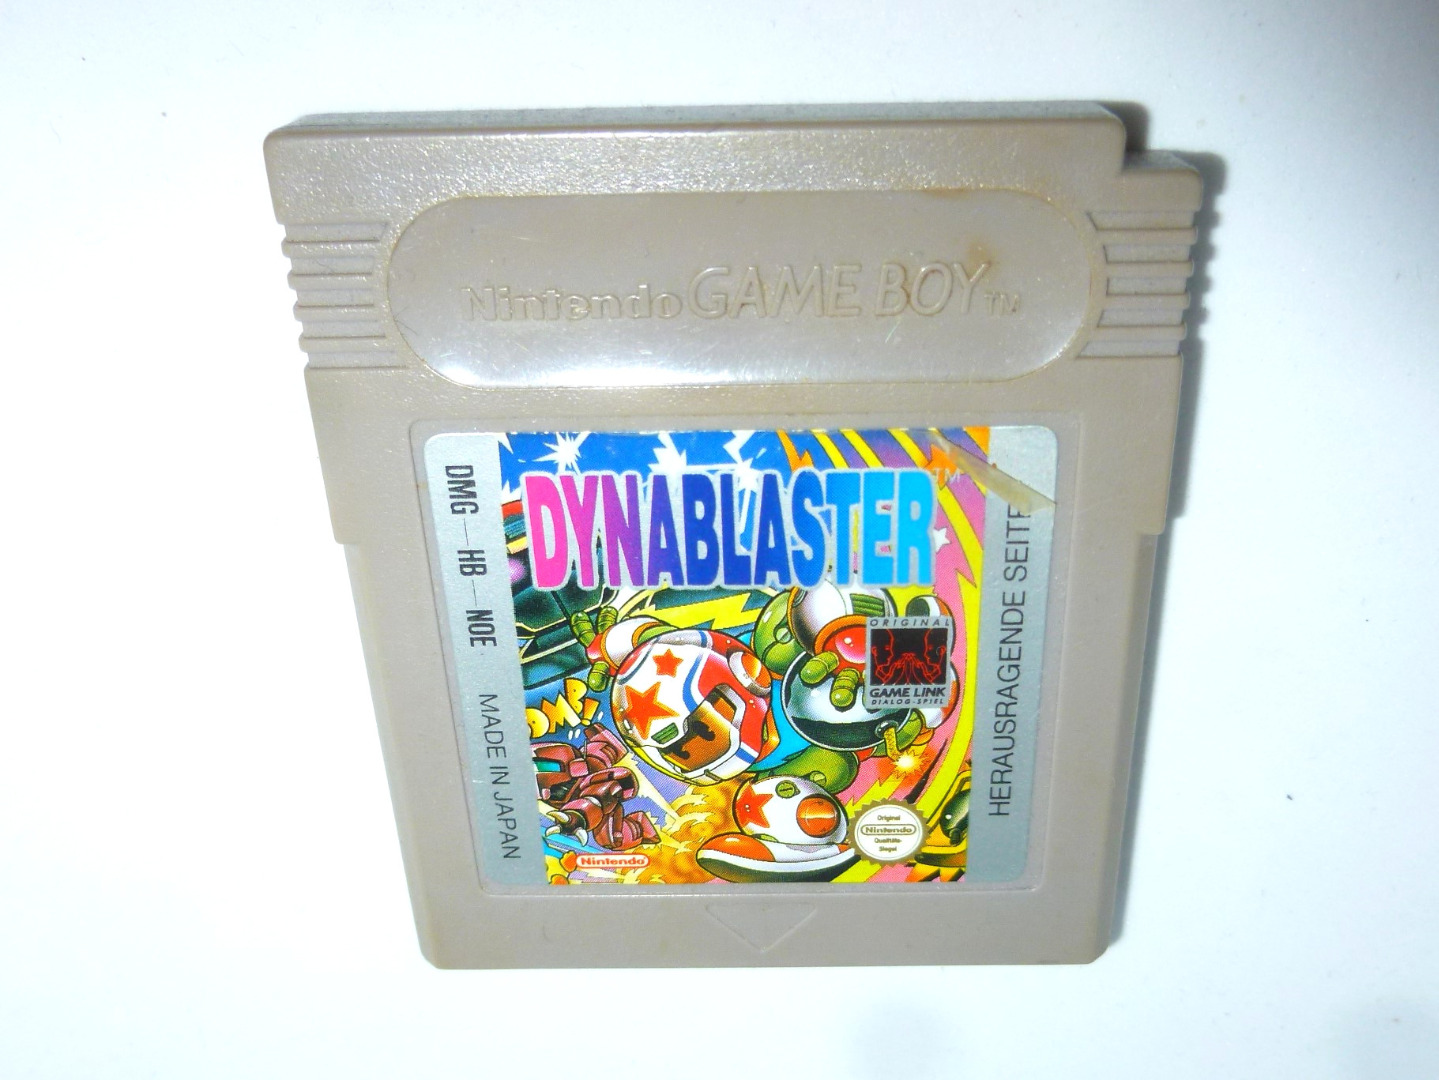 Nintendo Game Boy - Dynablaster